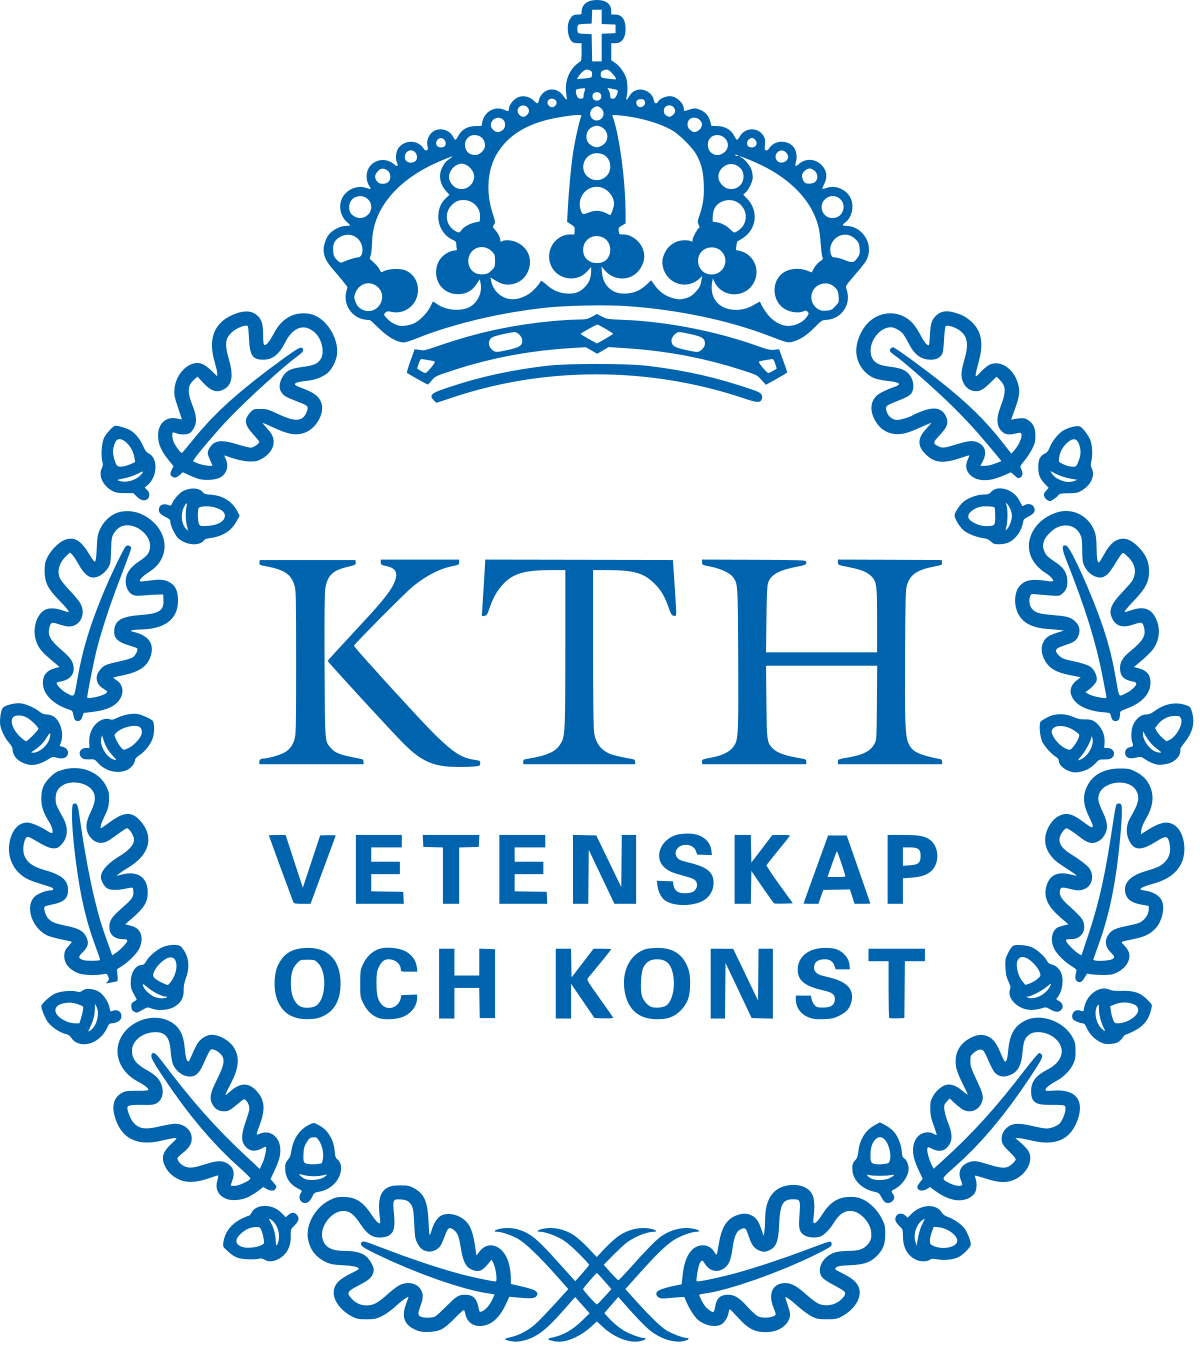 30 Bourses de Maîtrises de KTH Royal Institute of Technology 2020/2021 pour étudiants internationaux en Suède